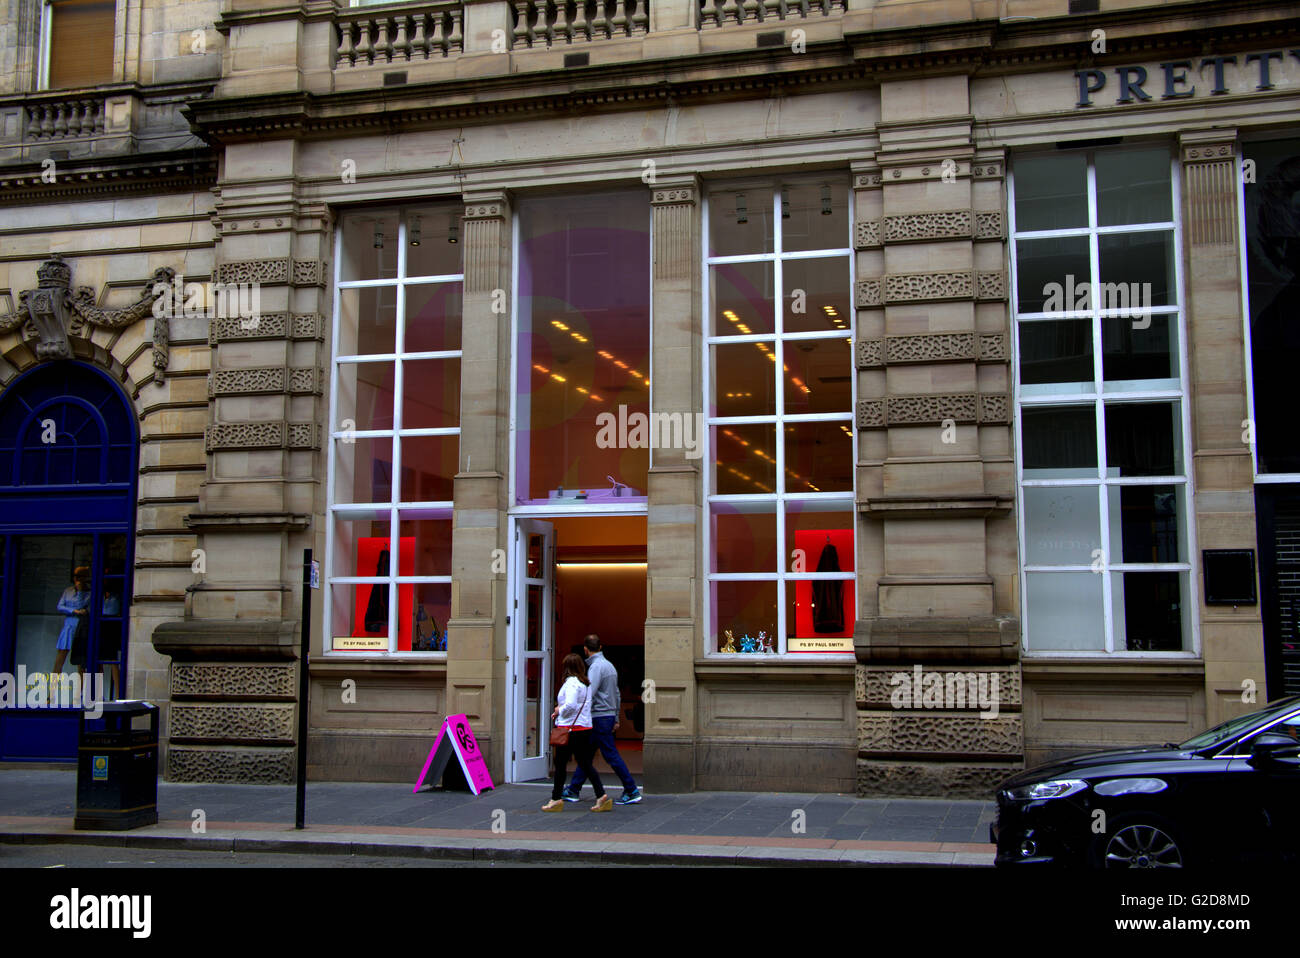 Glasgow, Royaume-Uni. 28 mai, 2016. Le célèbre styliste britannique Paul Smith a ouvert son premier magasin écossais, un pop-up concept magasin,whuch est ouvert pour une durée de six mois. Son sentiment spécial pour la ville a été récemment mis en lumière dans son 'Bonjour, mon nom est Paul Smith' exposition qui a couru dans 'Le Phare' de centre de conception plus tôt cette année. Credit : Gérard ferry/Alamy Live News Banque D'Images